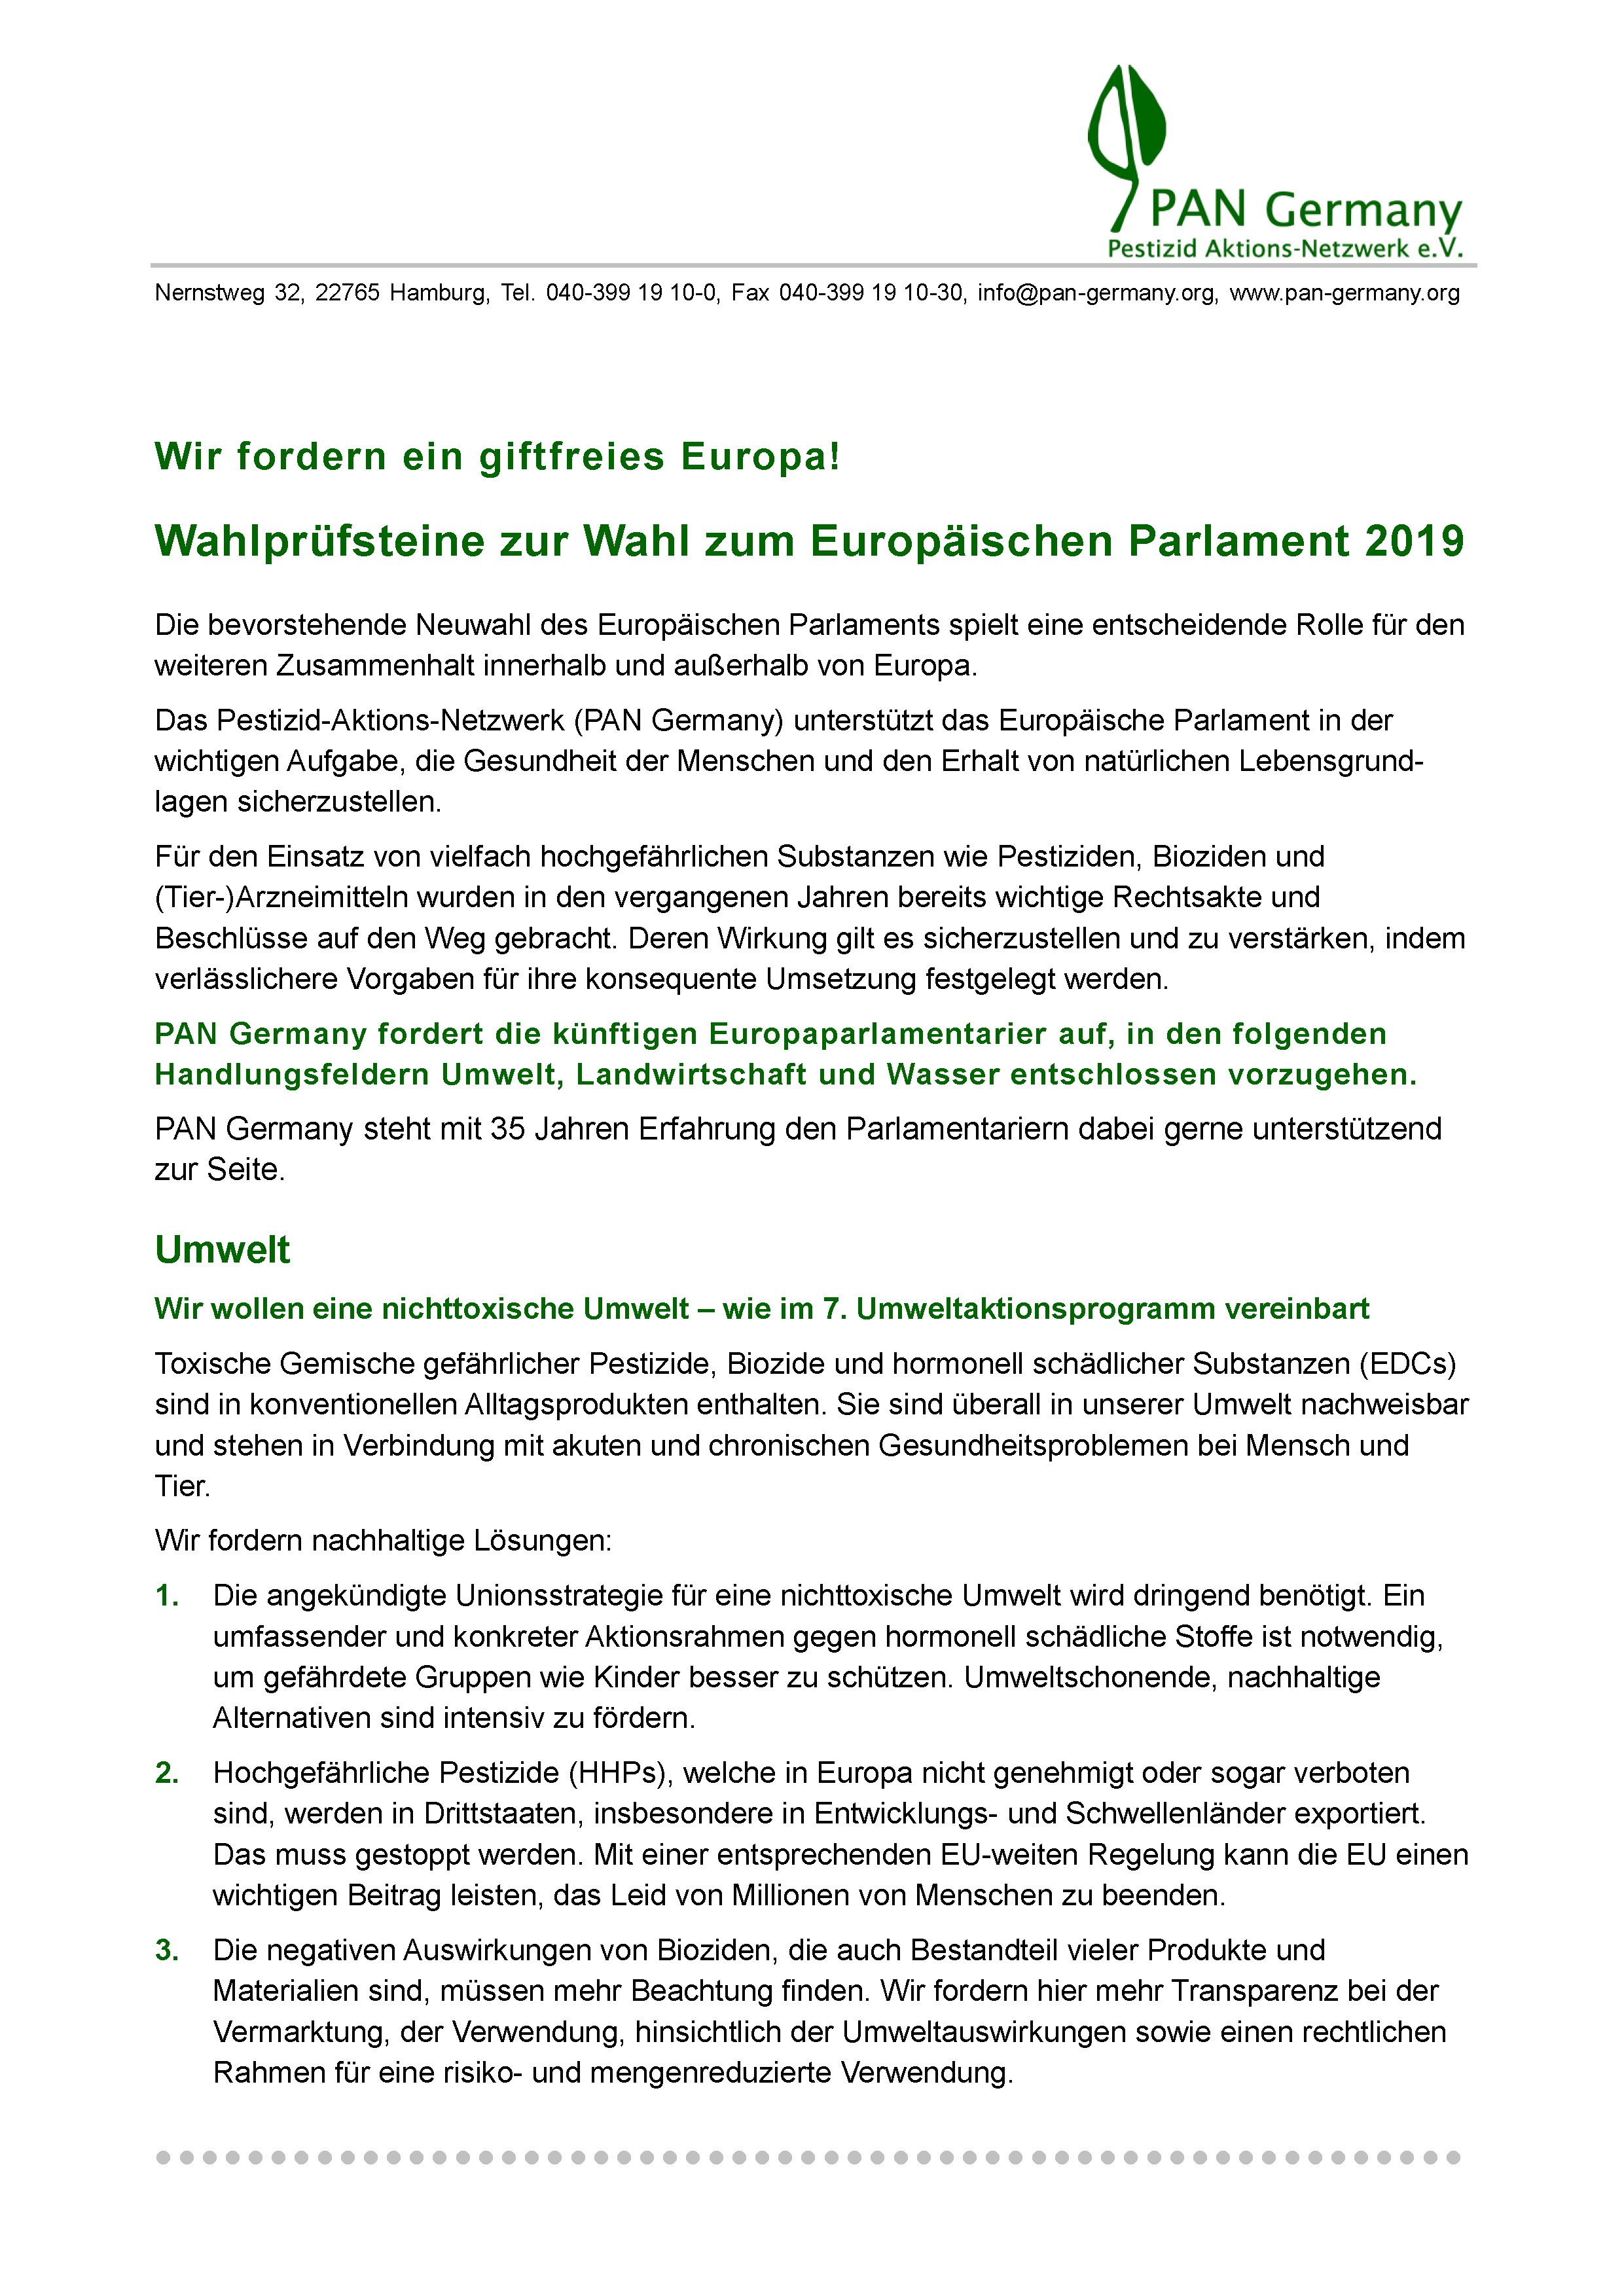 PAN Germany Wahlprüfsteine 2019